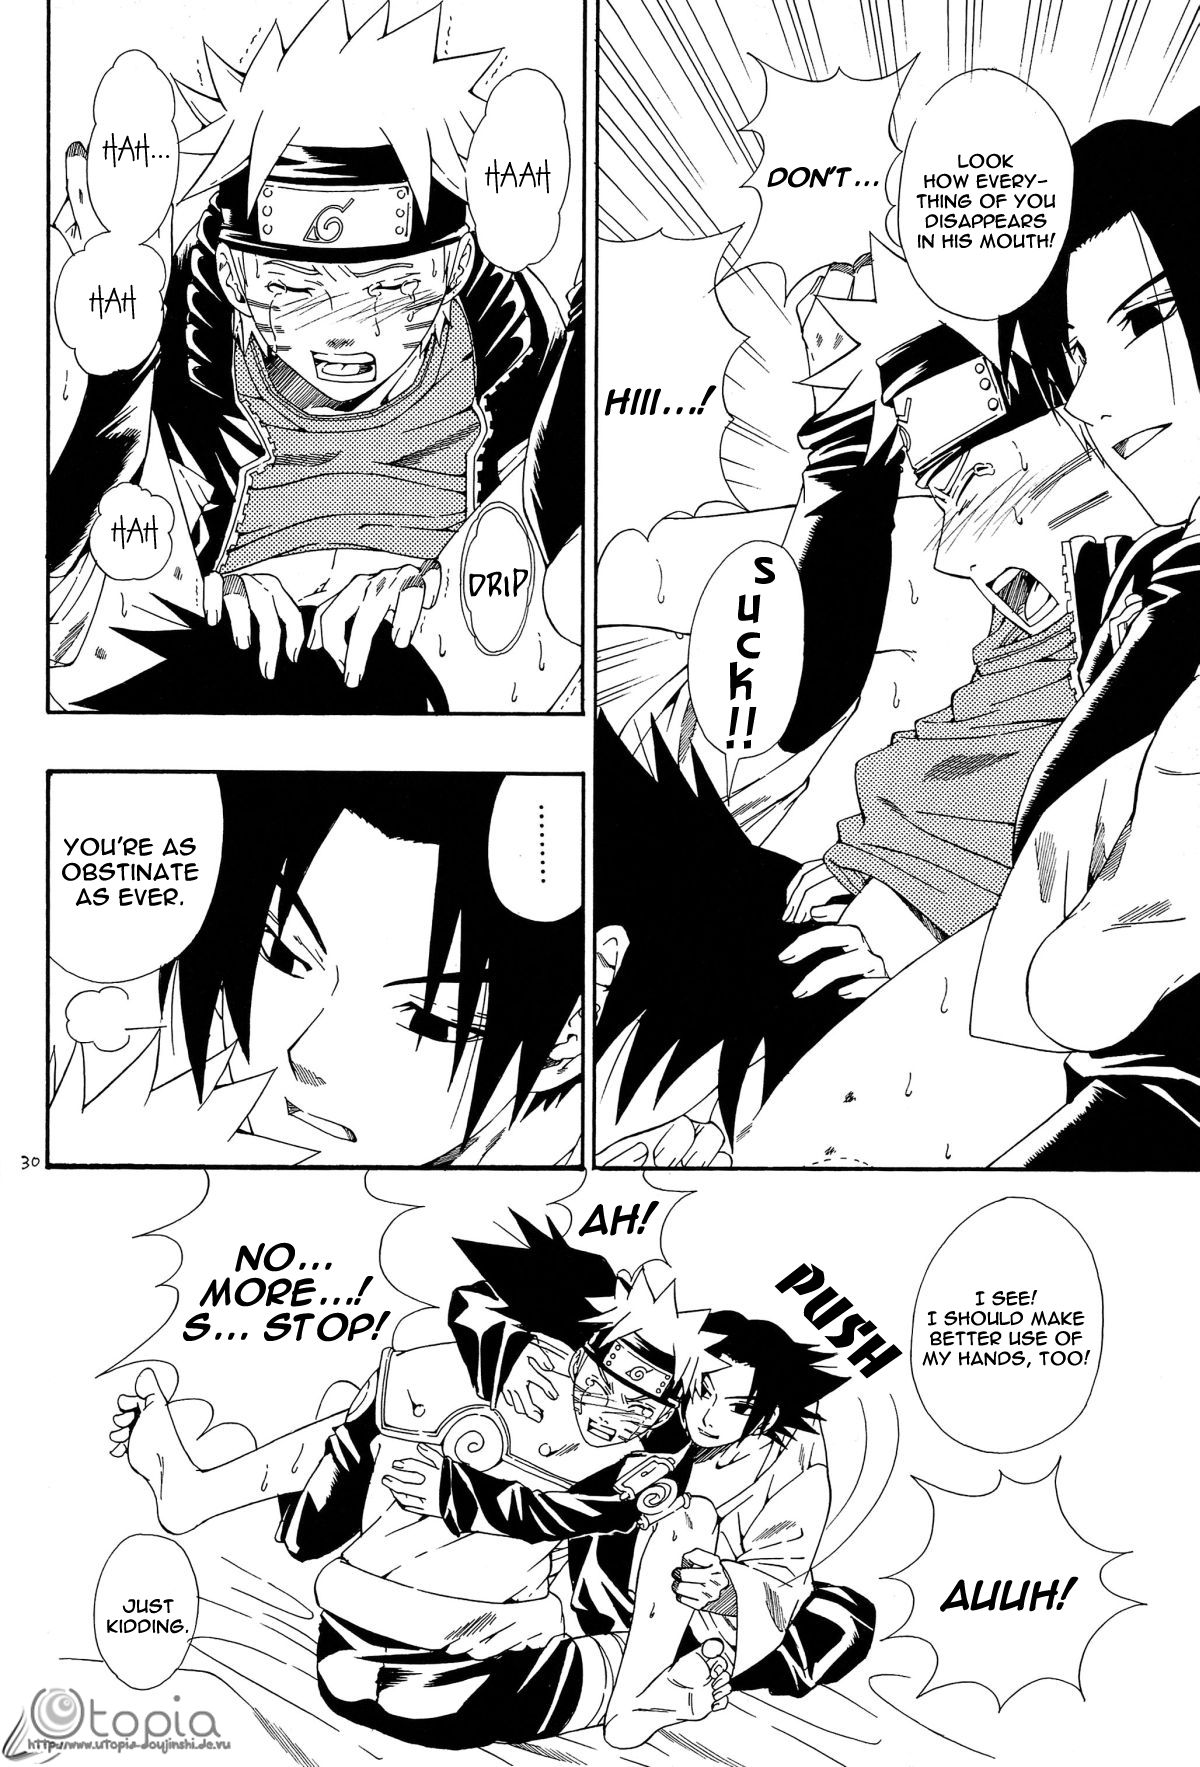 ERO ERO ERO (NARUTO) [Sasuke X Naruto] YAOI -ENG- page 28 full